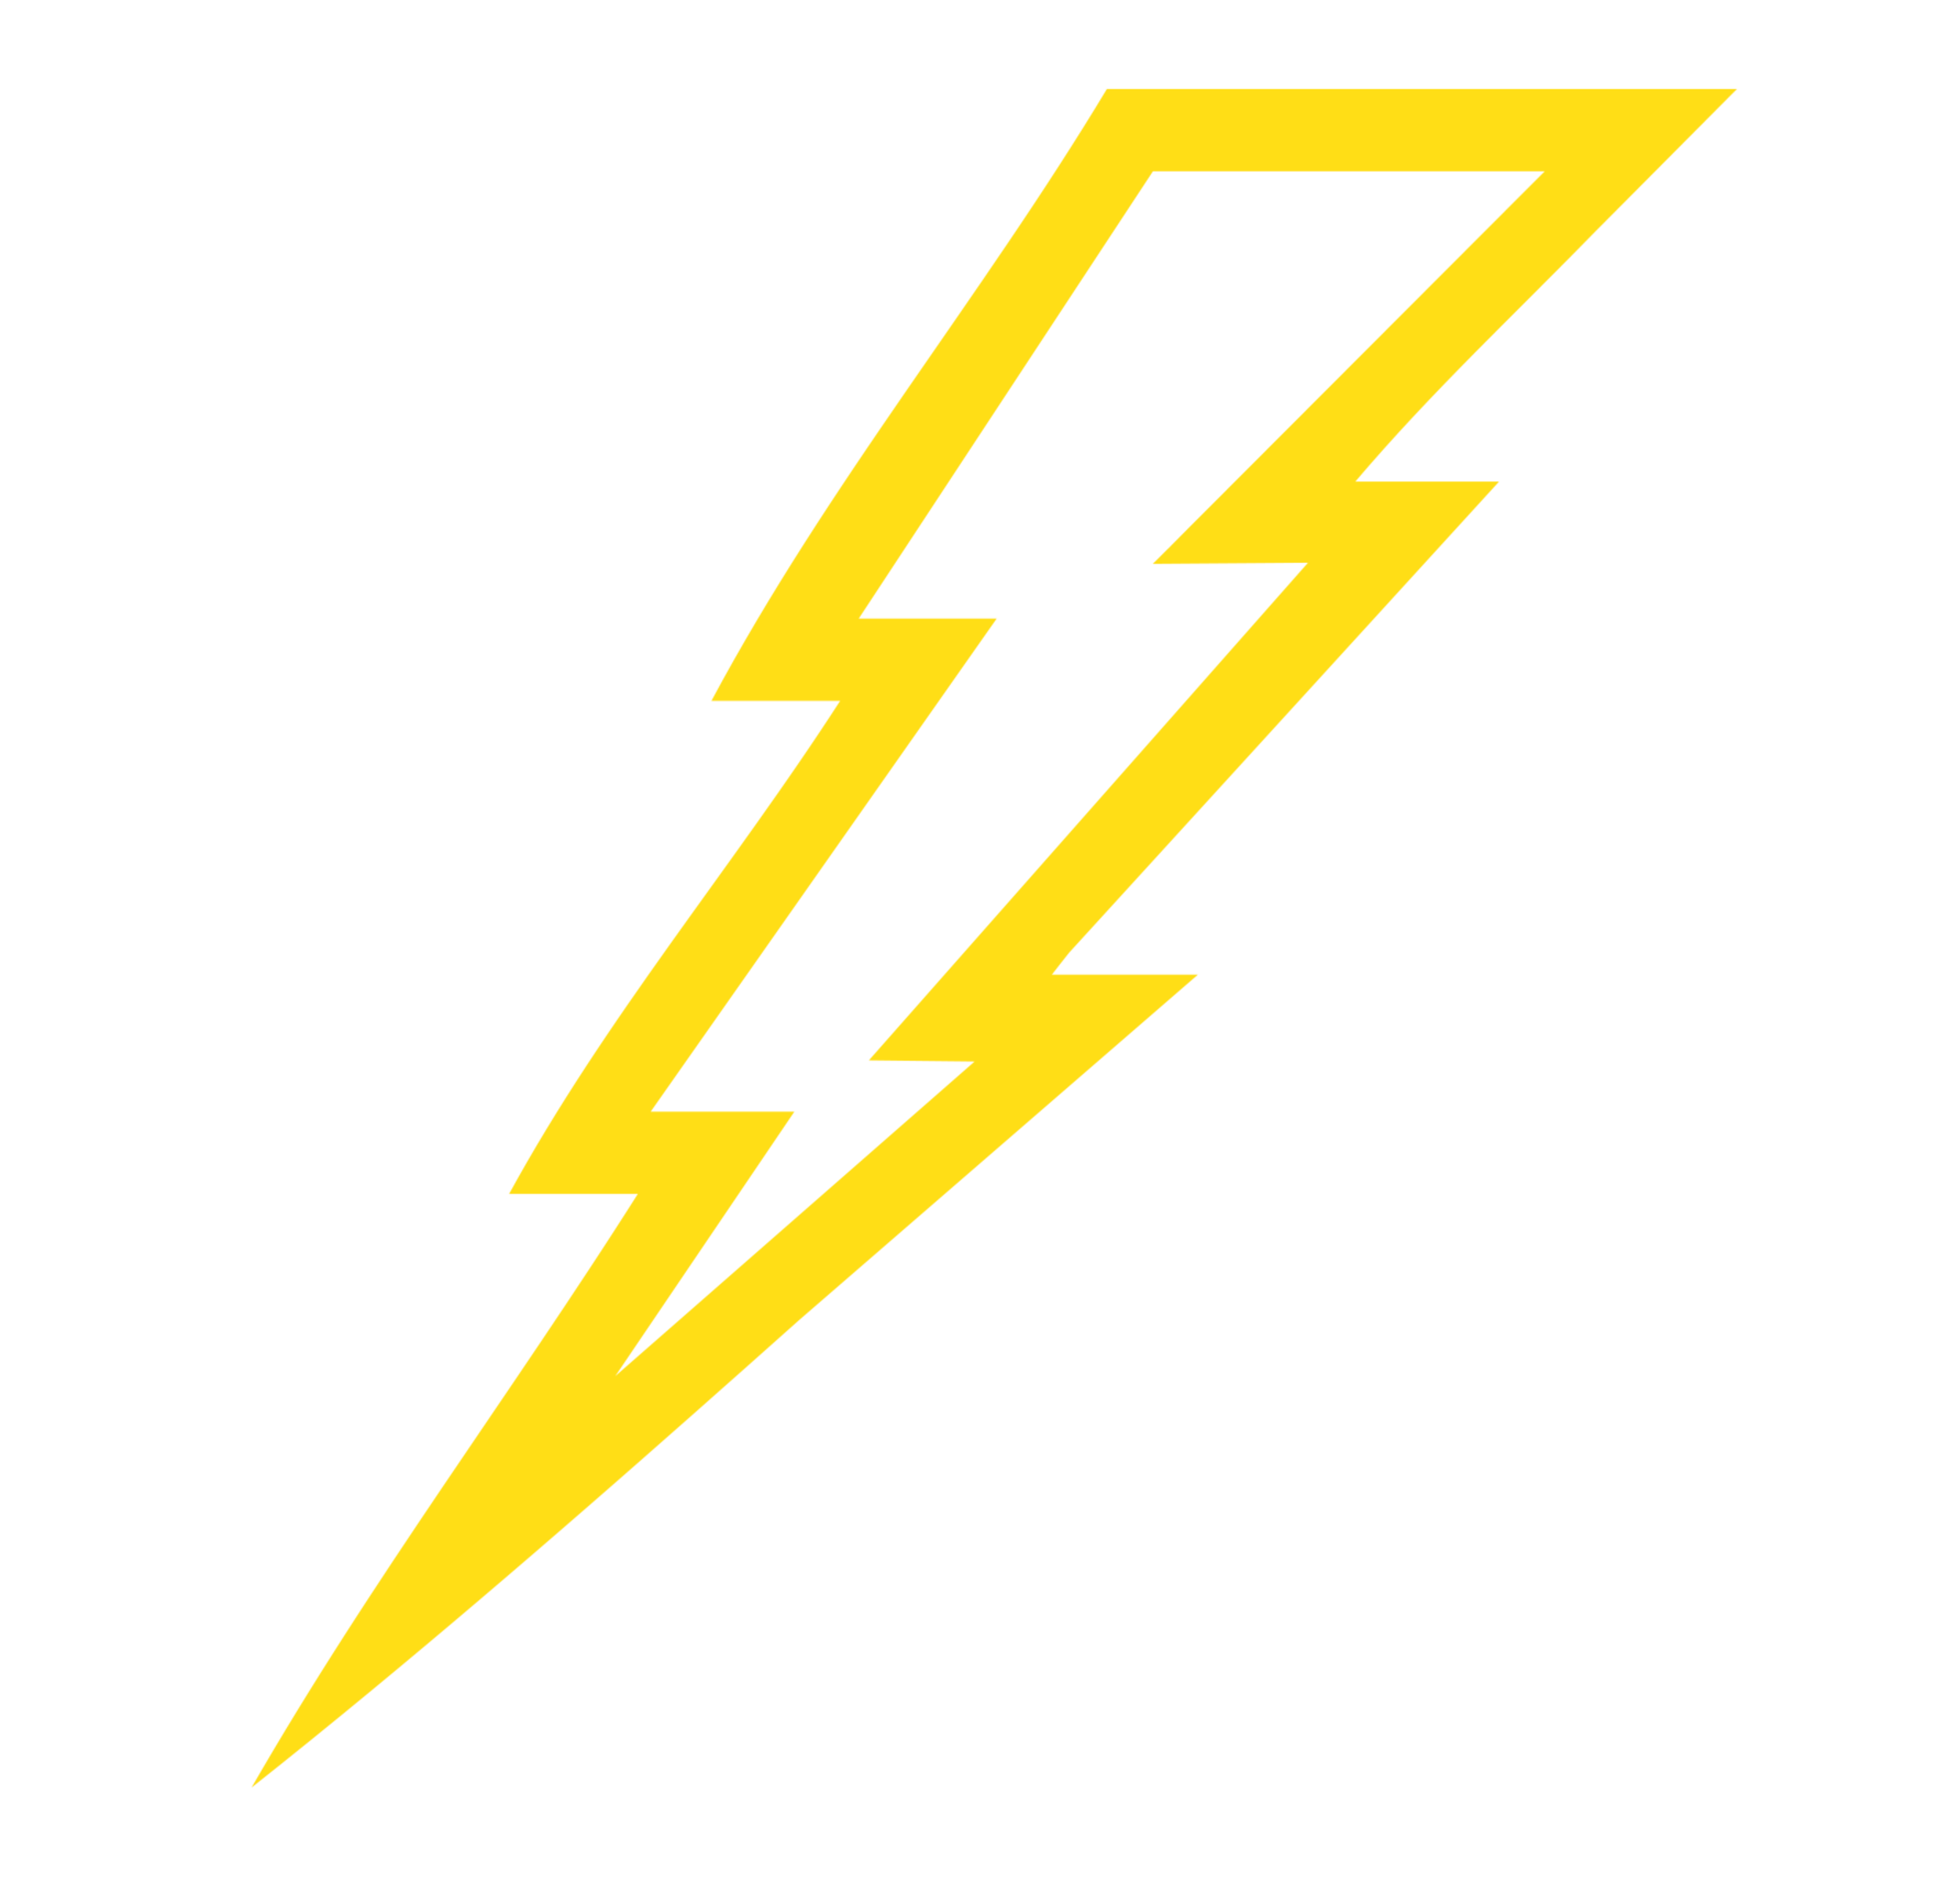 Lightning PNG images Download